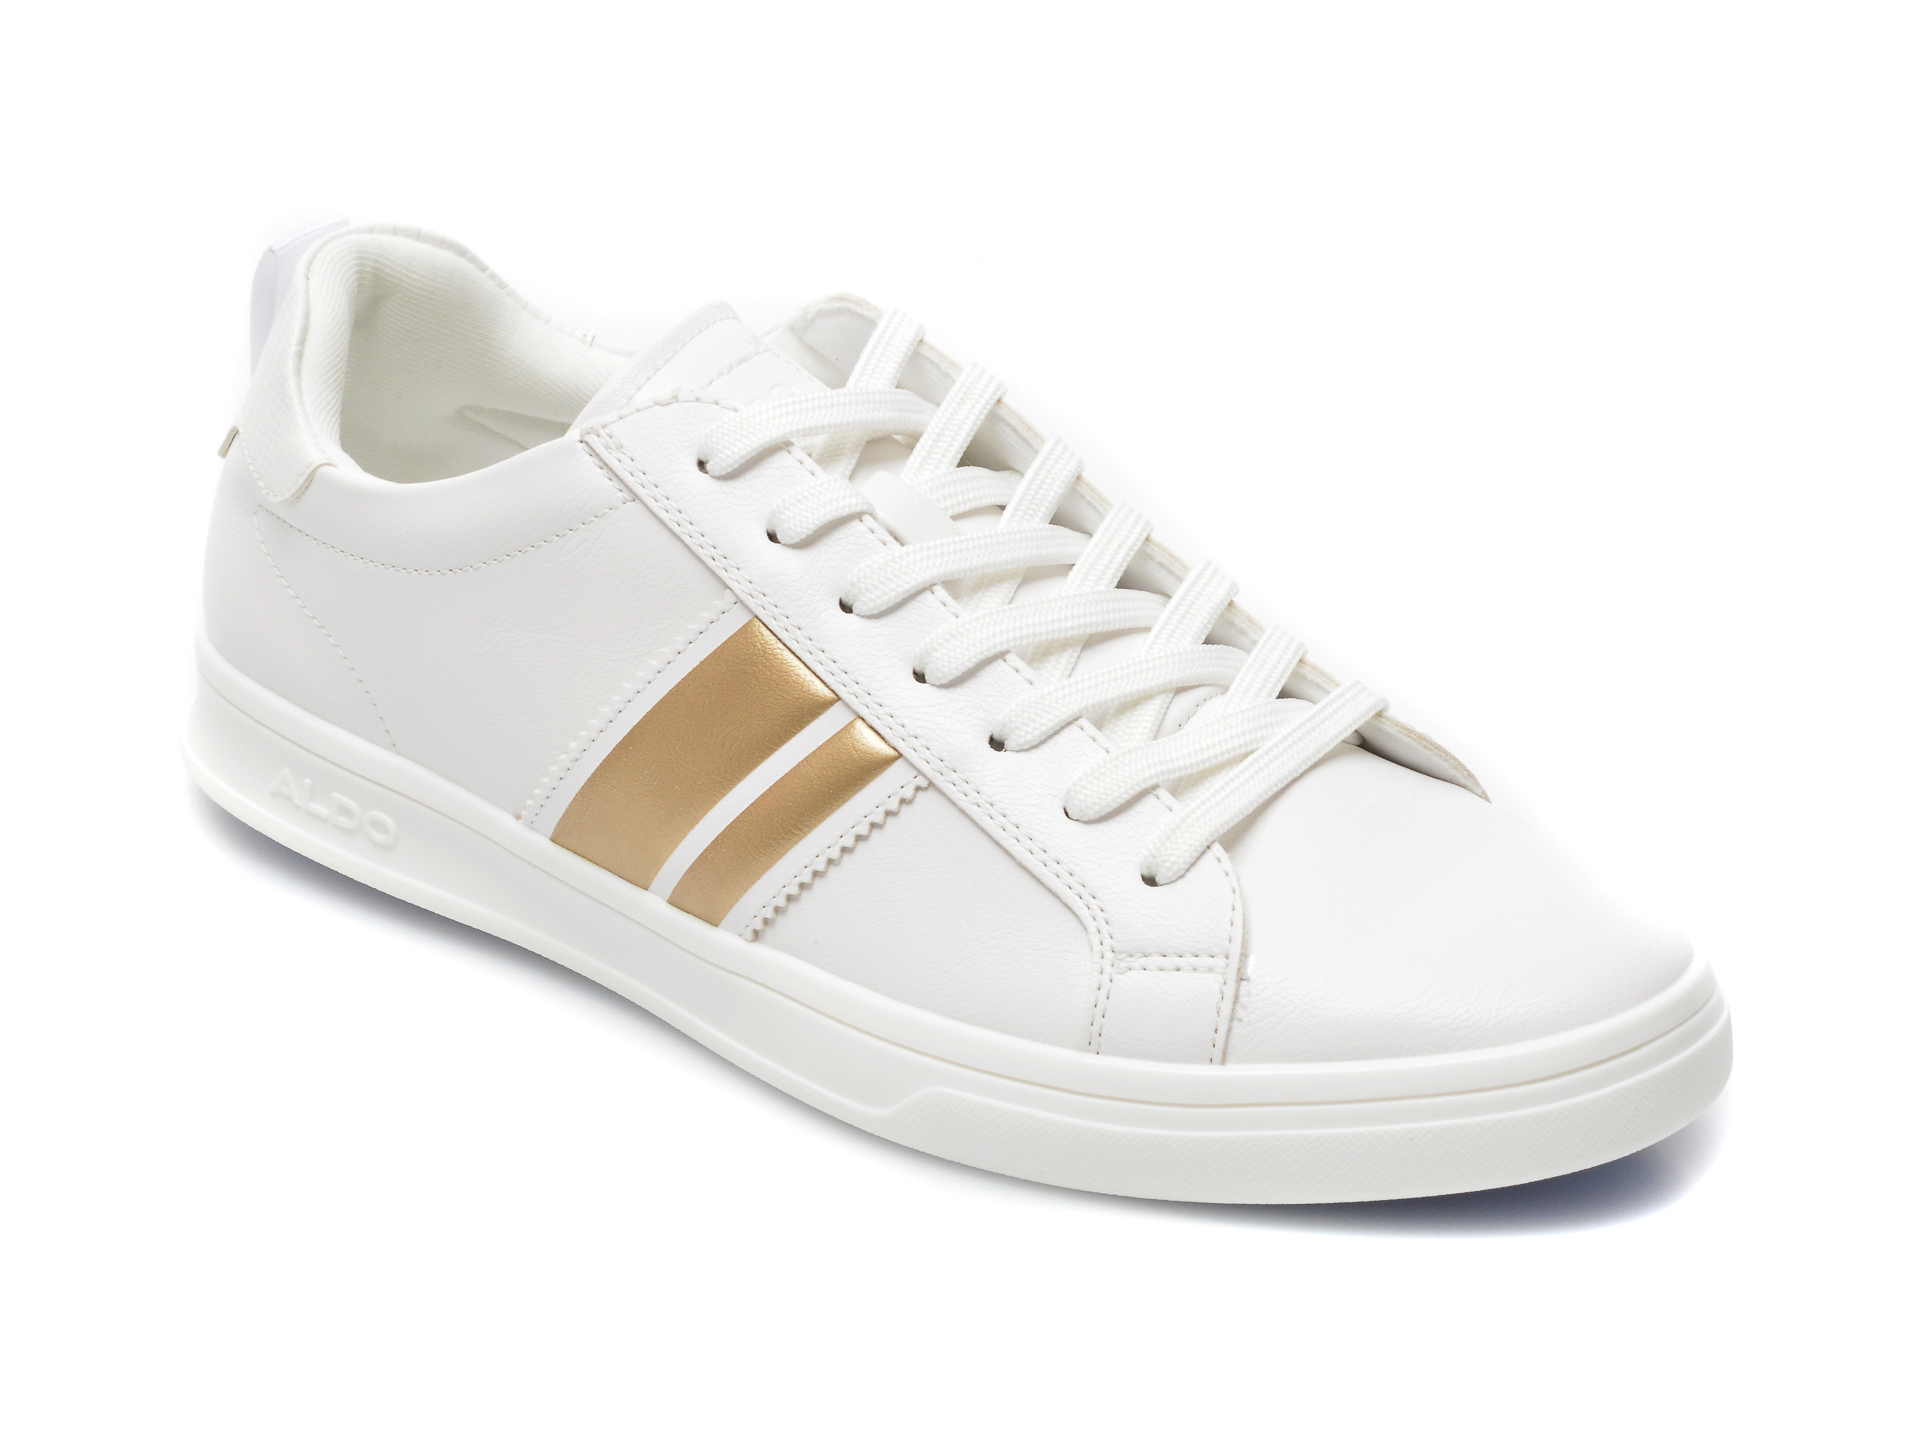 Pantofi sport ALDO albi, Malisien100, din piele ecologica Aldo